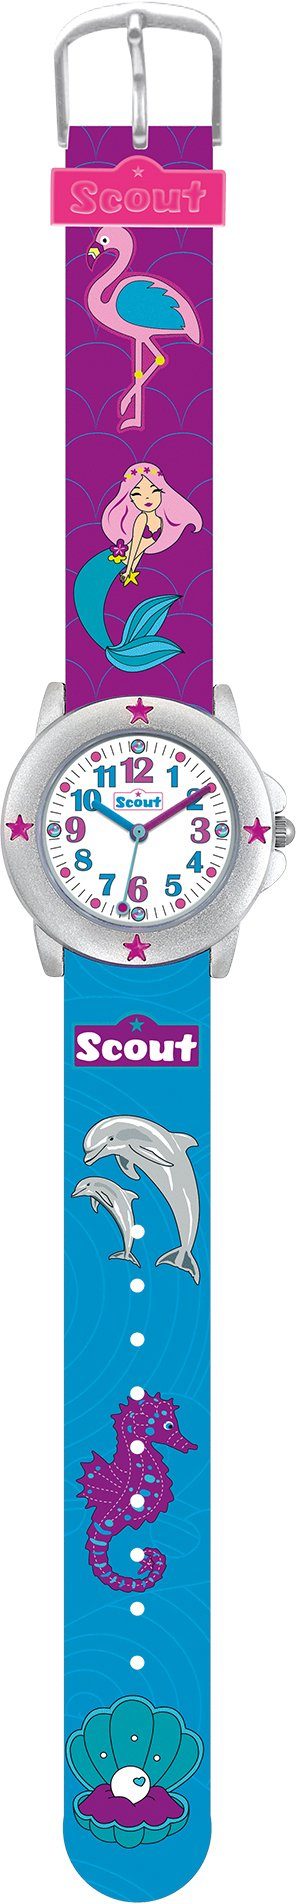 Scout Quarzuhr Star Kids, Muschel-Delphin-,Meerjungfraumotiv, auch als 280393023, ideal Geschenk